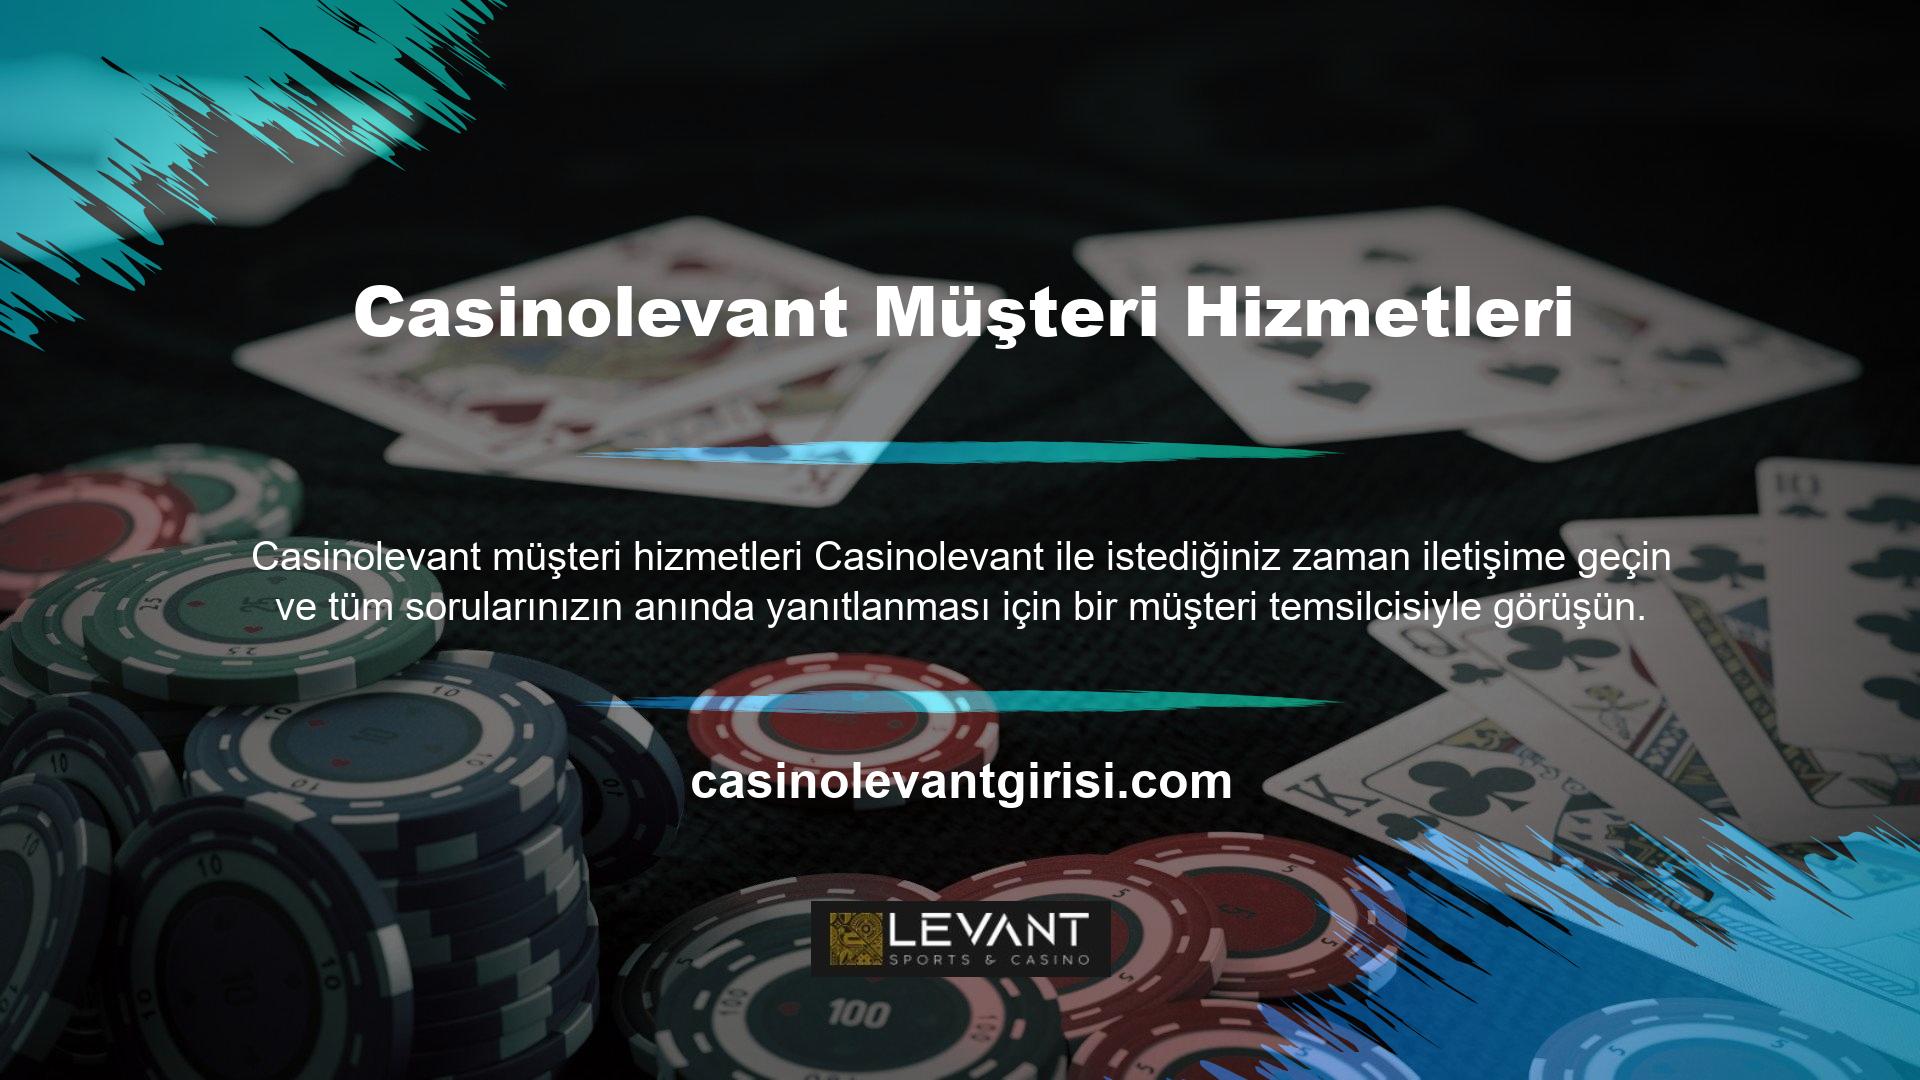 Casinolevant müşteri hizmetlerine, casino şirketinin web sitesinde yer alan canlı destek menüsü aracılığıyla çok rahat bir şekilde ulaşılabilmektedir